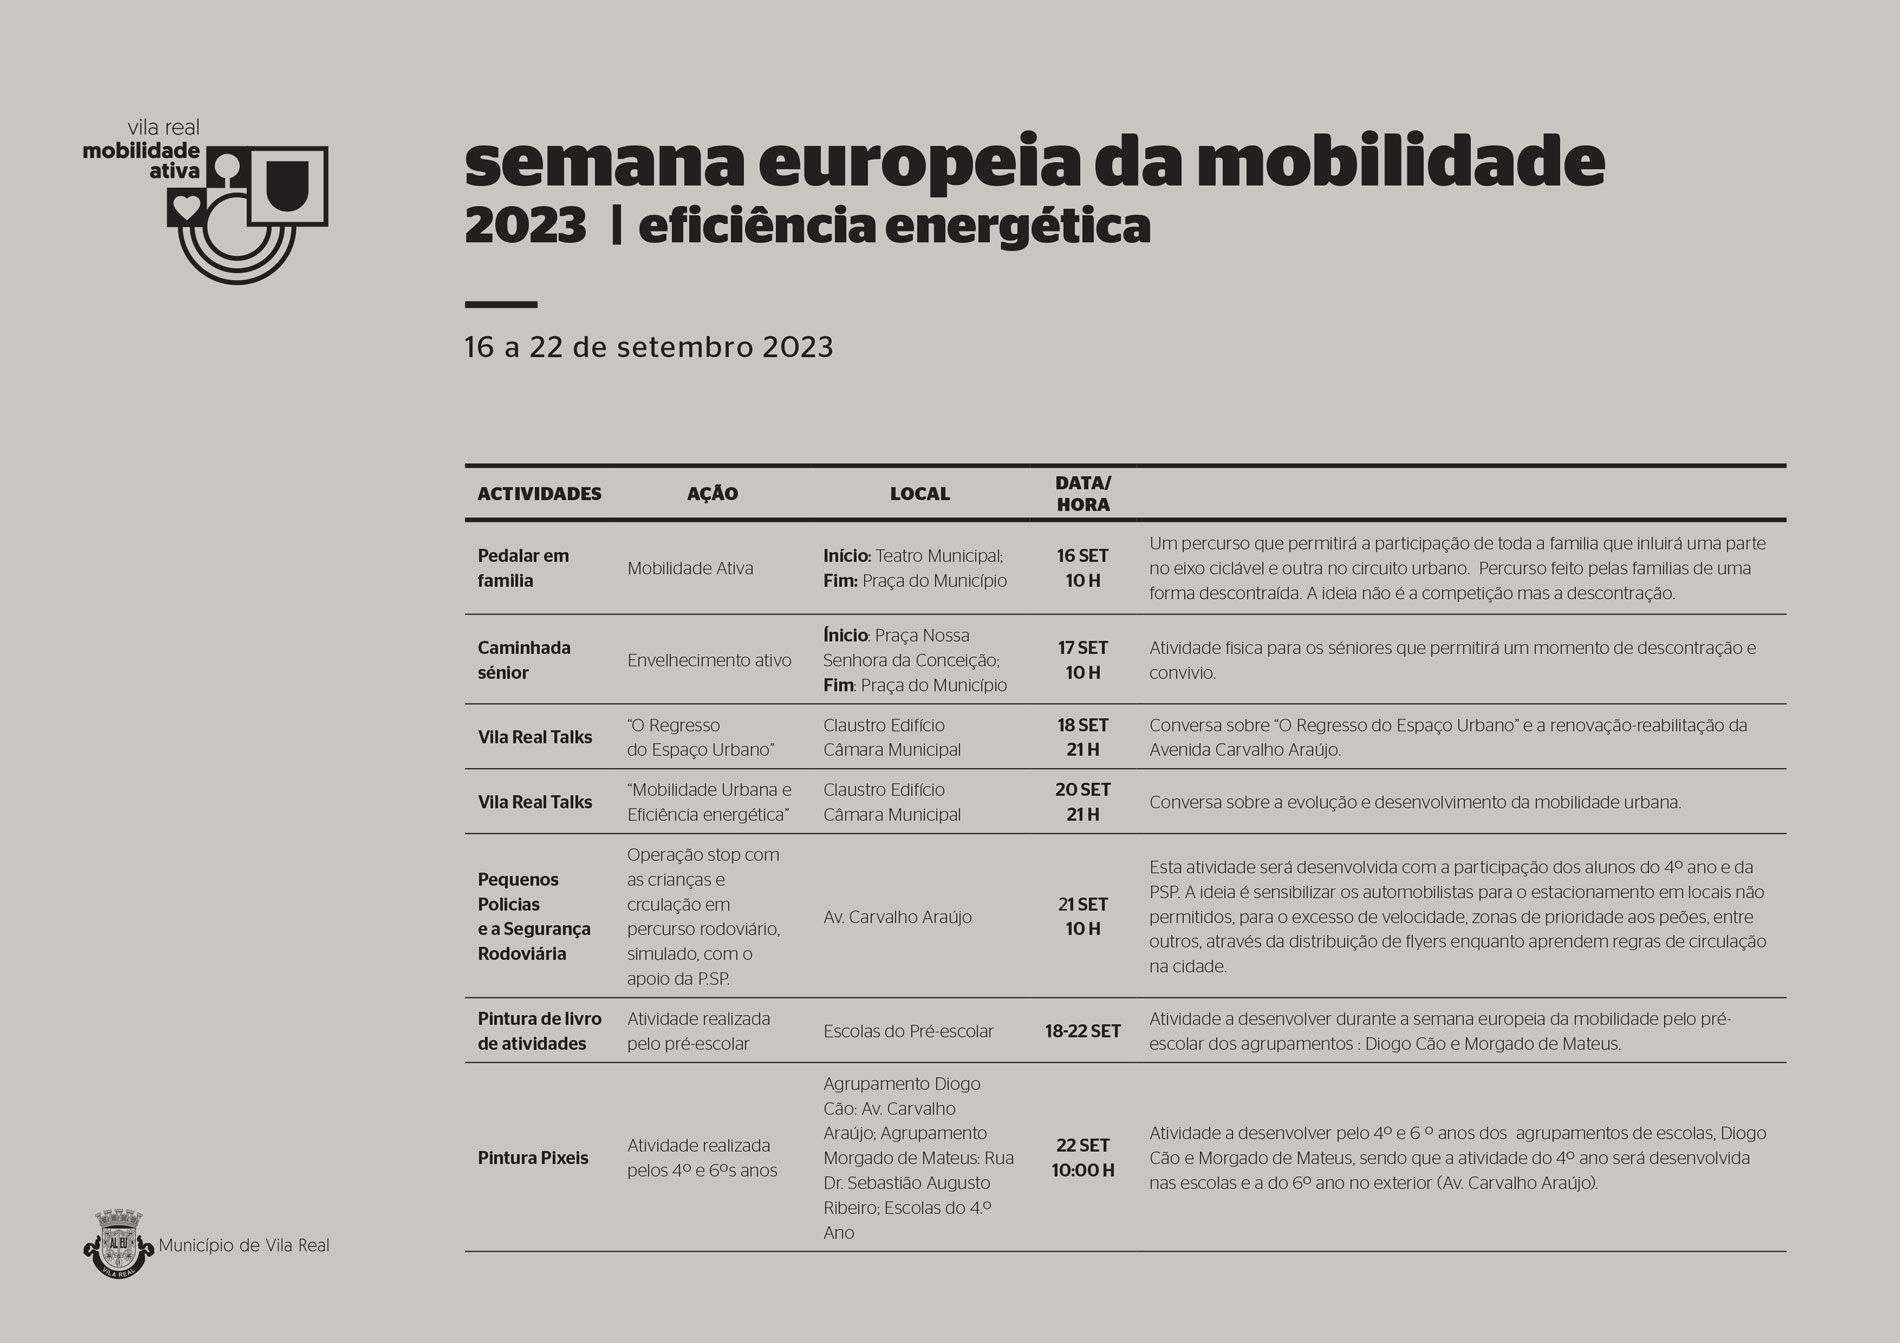 SEMANA EUROPEIA DA MOBILIDADE 2023 PROMOVE A EFICIÊNCIA ENERGÉTICA 